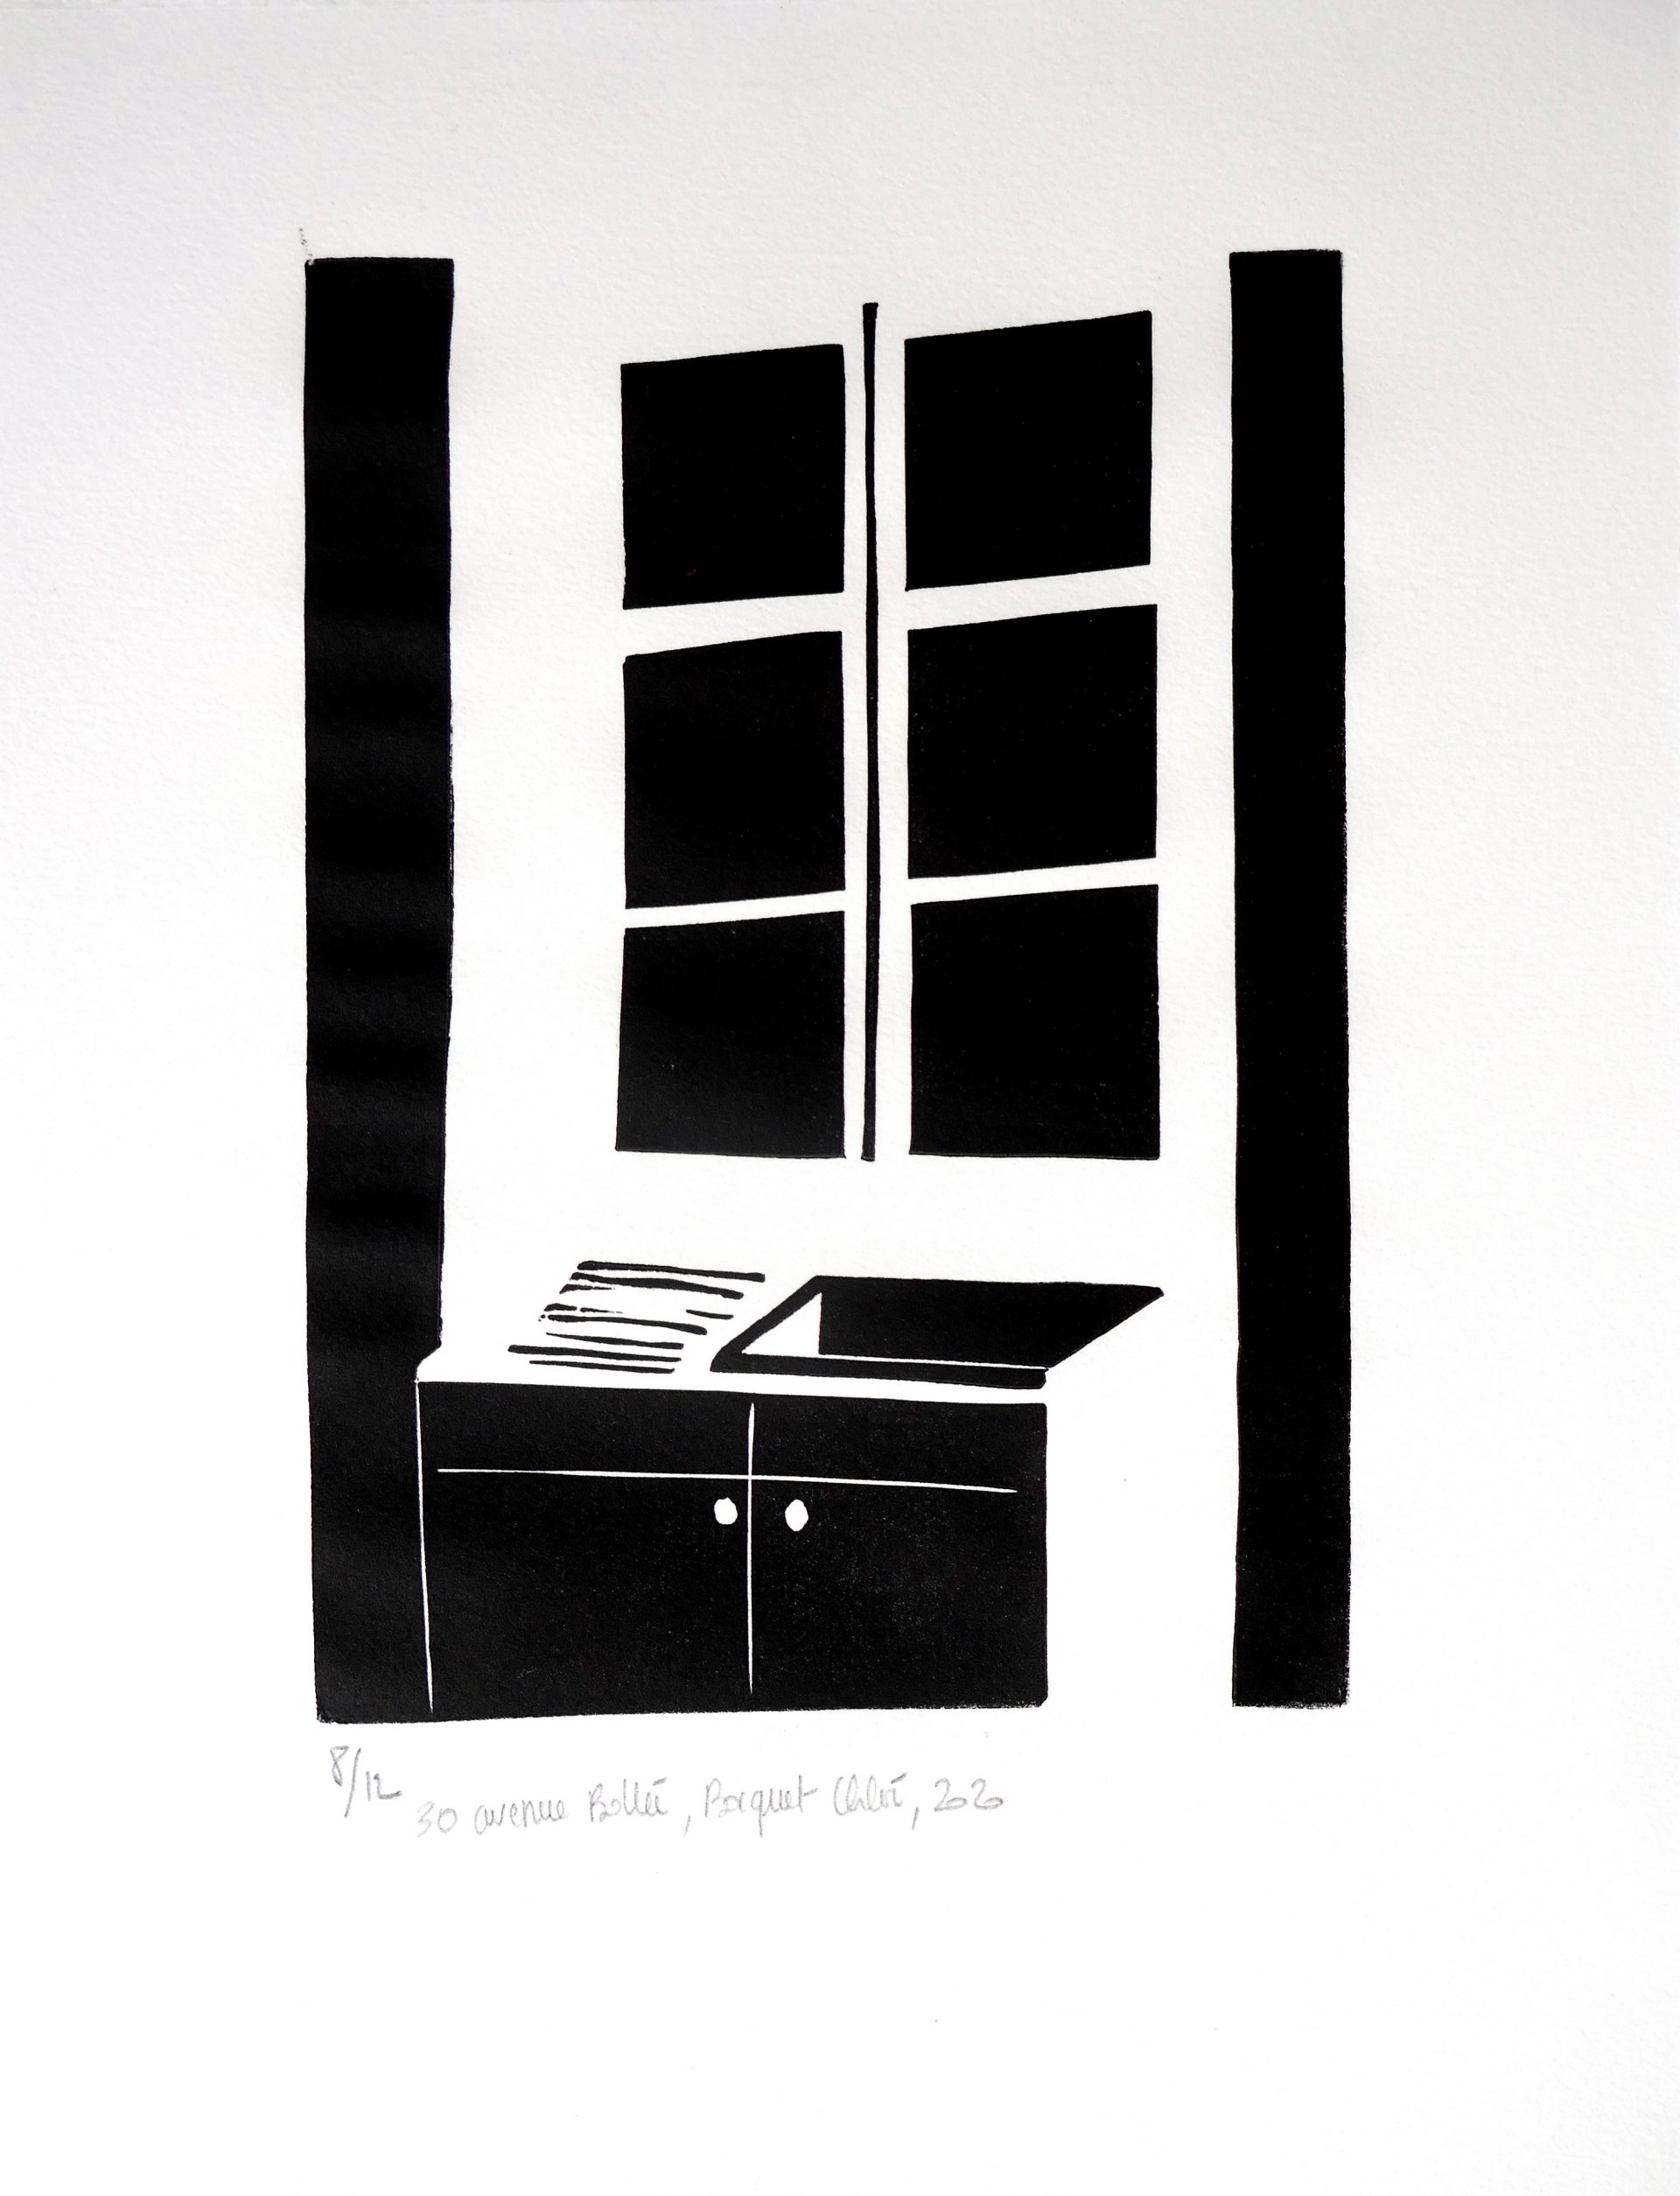 30 avenue Bollée, 2020, linocut, image size 21x15 cm, paper size 32,5x25 cm, edition of 12